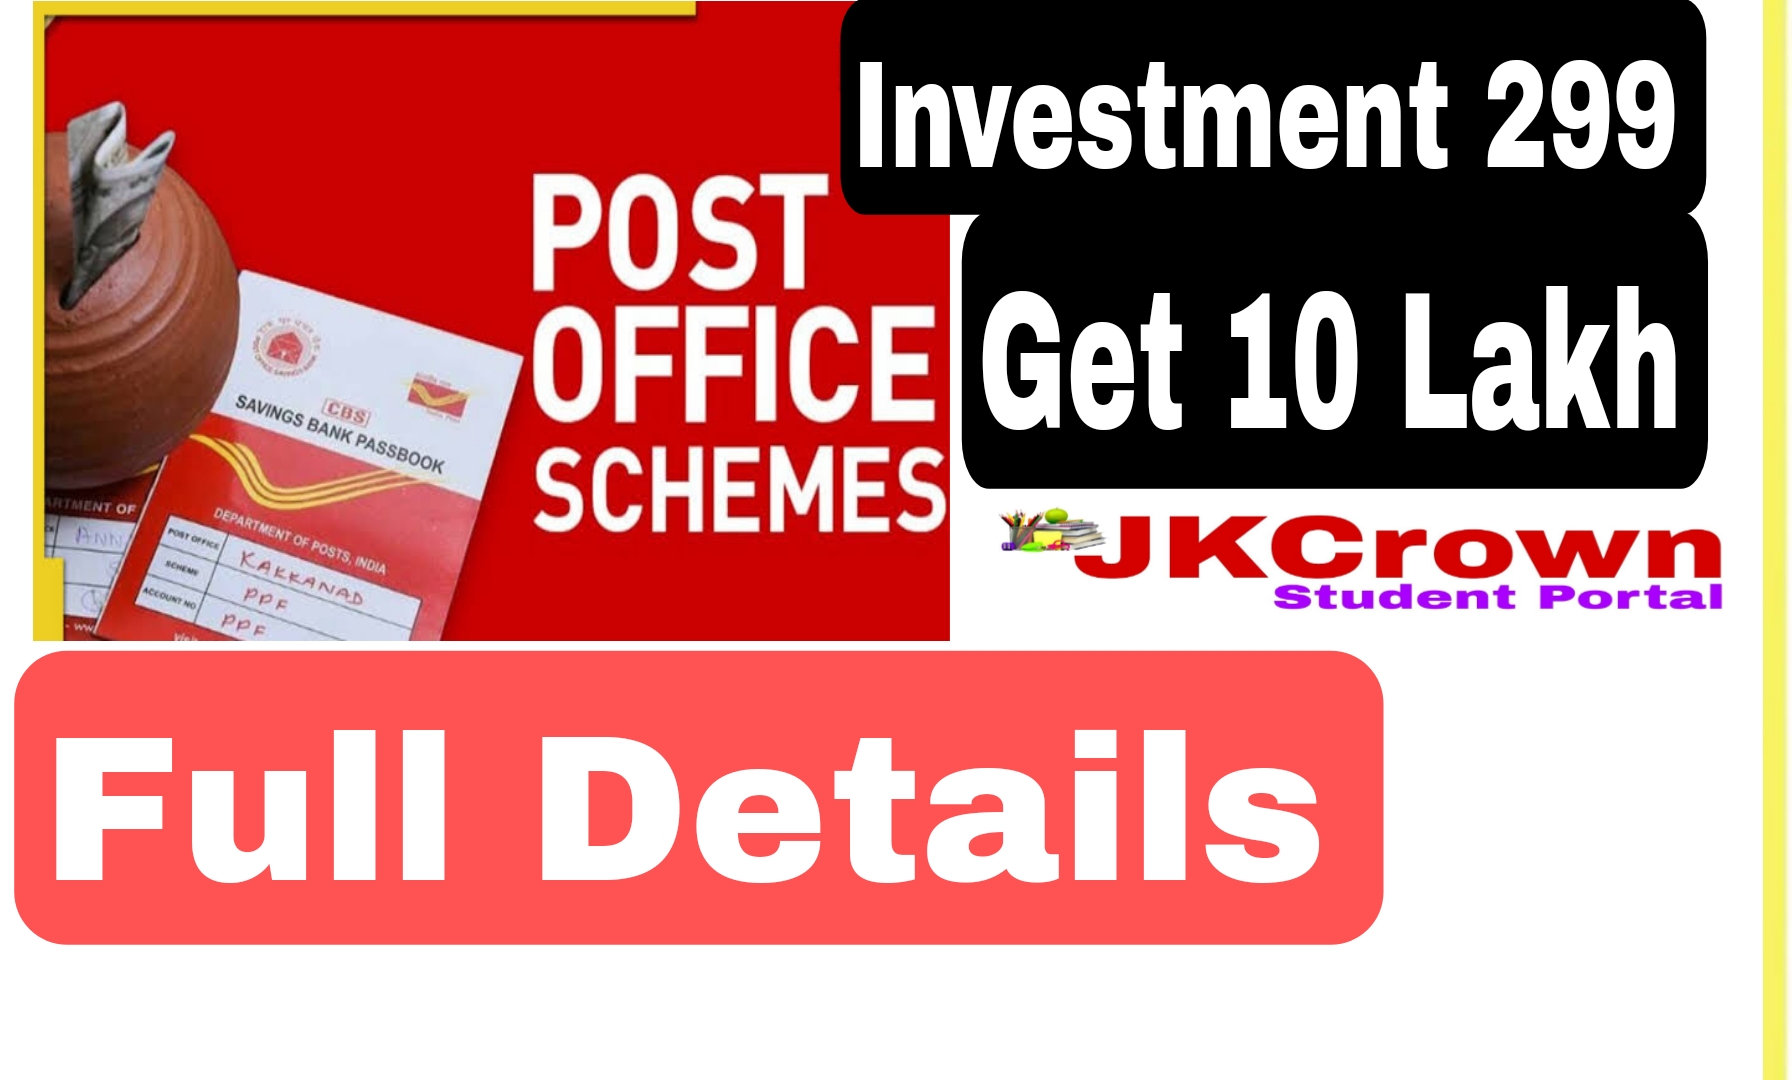 Post Office Scheme: